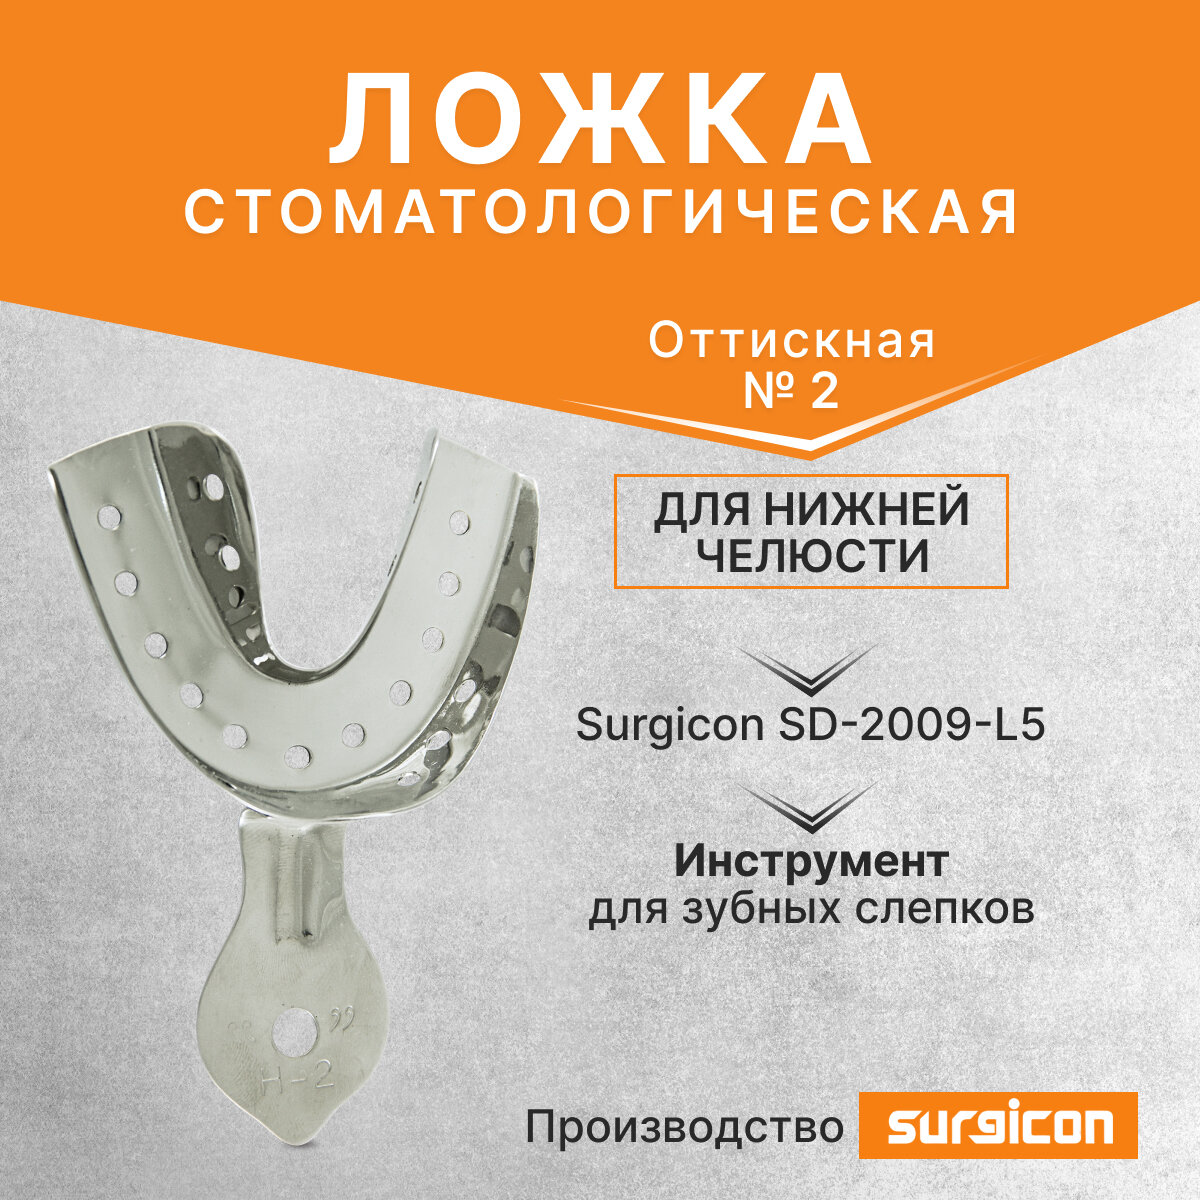 Ложка оттискная стоматологическая для нижней челюсти №2 Surgicon SD-2009-L5